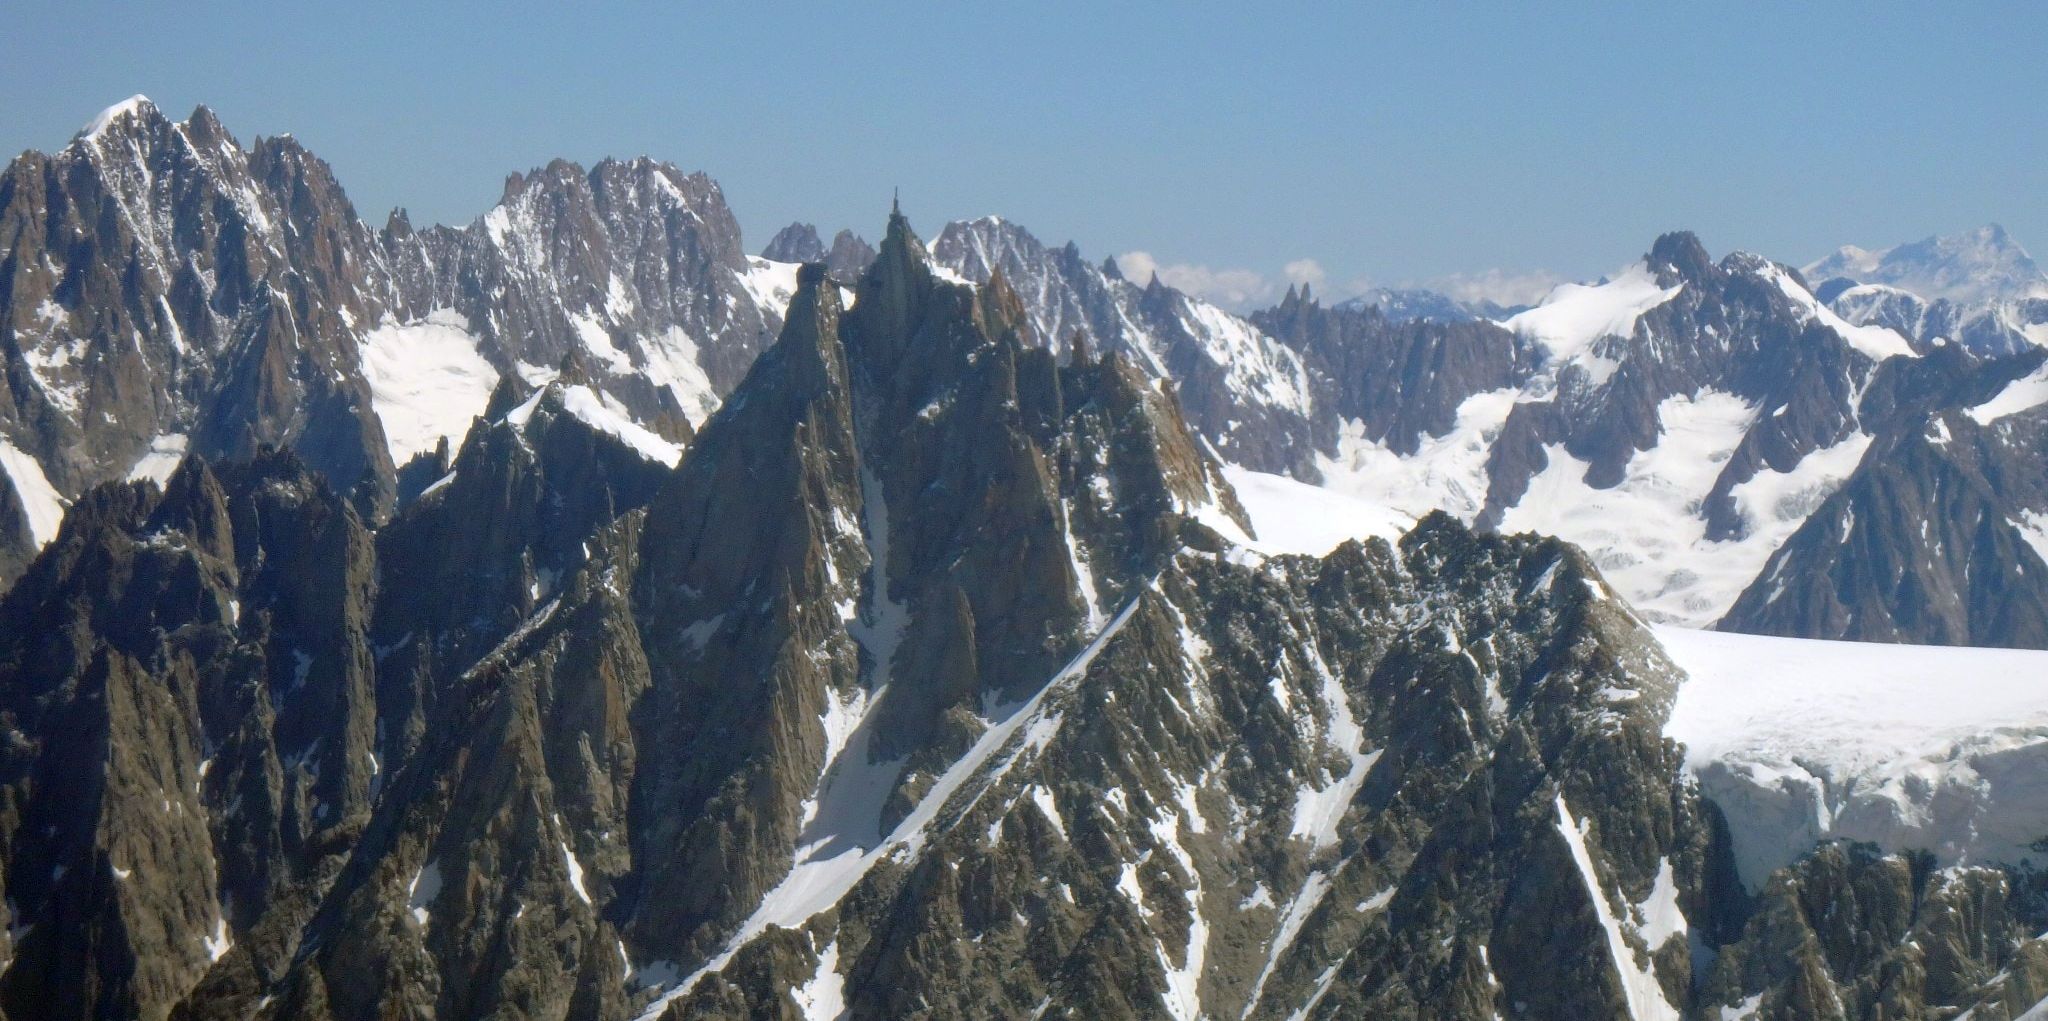 Chamonix Aiguilles and Aiguille du Midi